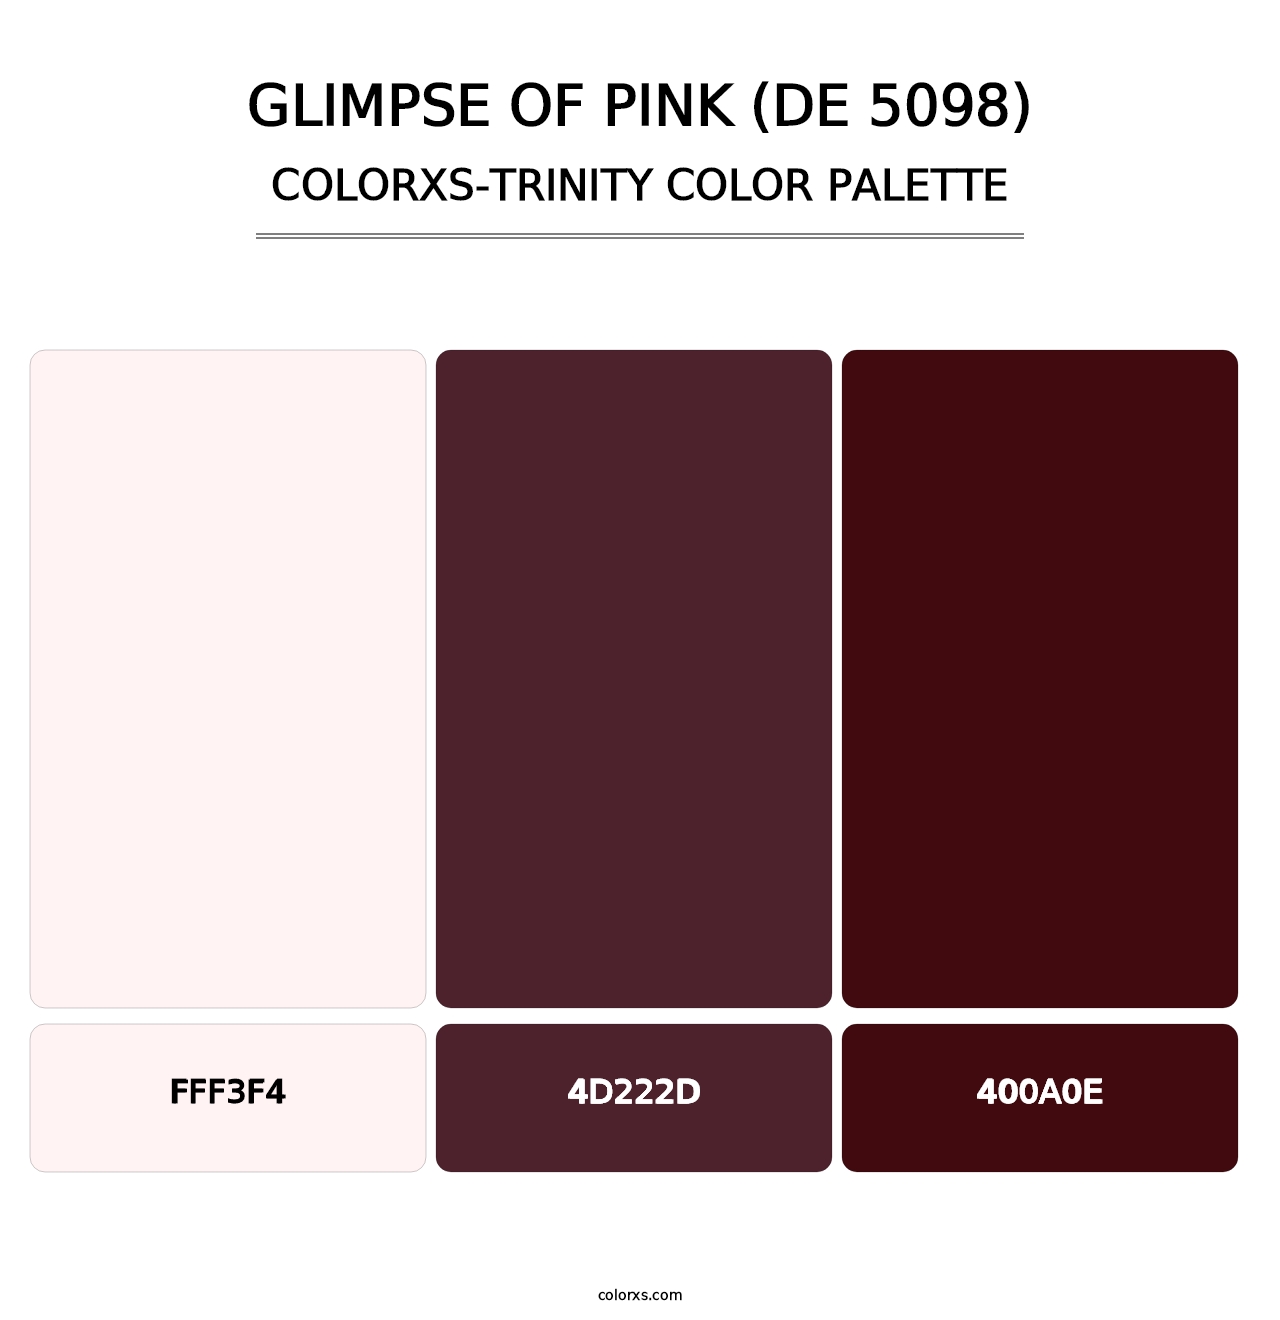 Glimpse of Pink (DE 5098) - Colorxs Trinity Palette